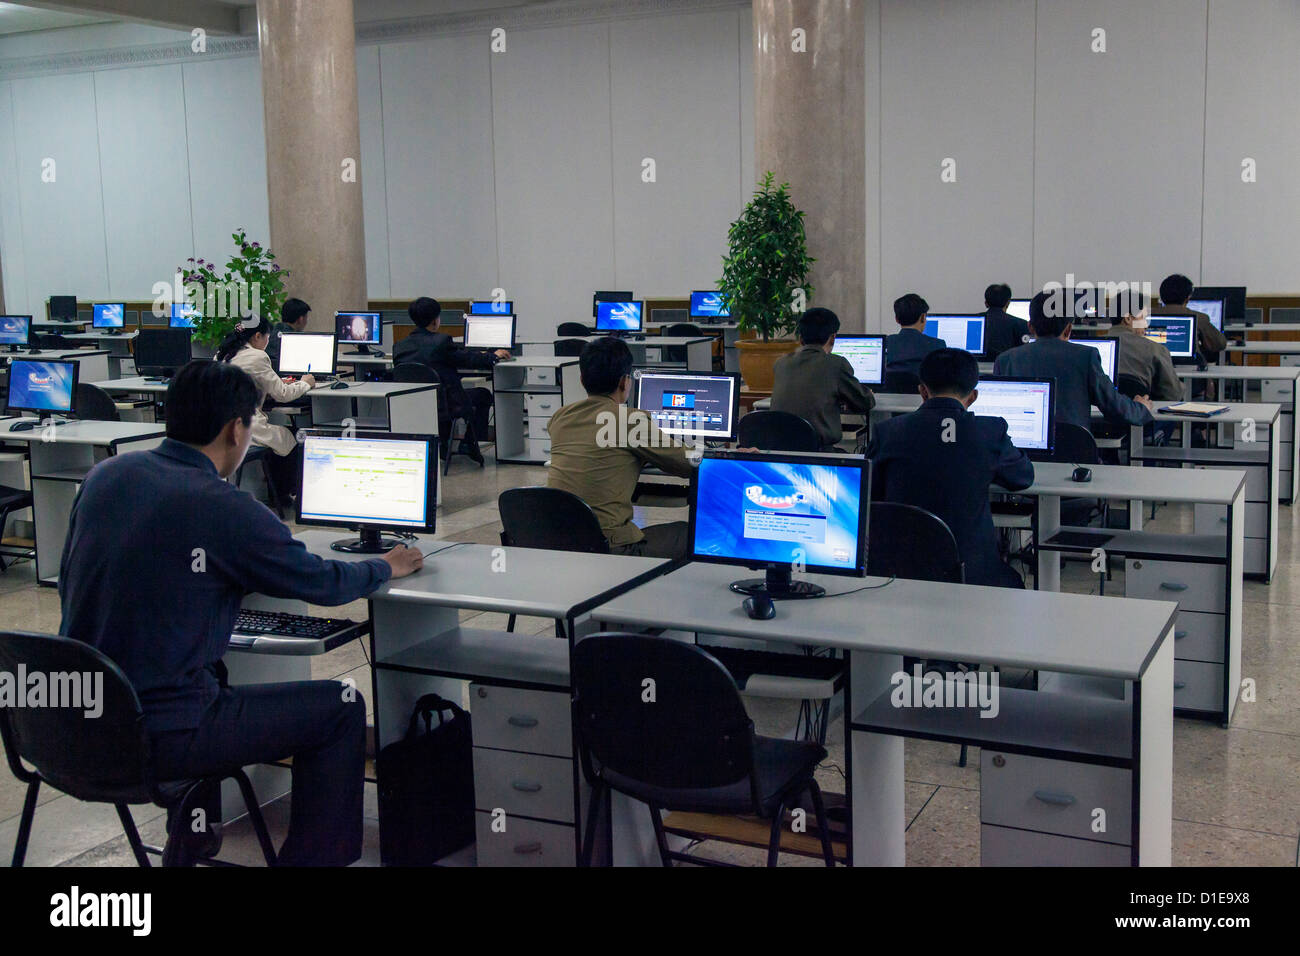 Grand popolare casa di studio, computer in aula Intranet, Pyongyang, Repubblica Popolare Democratica di Corea (DPRK), Corea del Nord Foto Stock